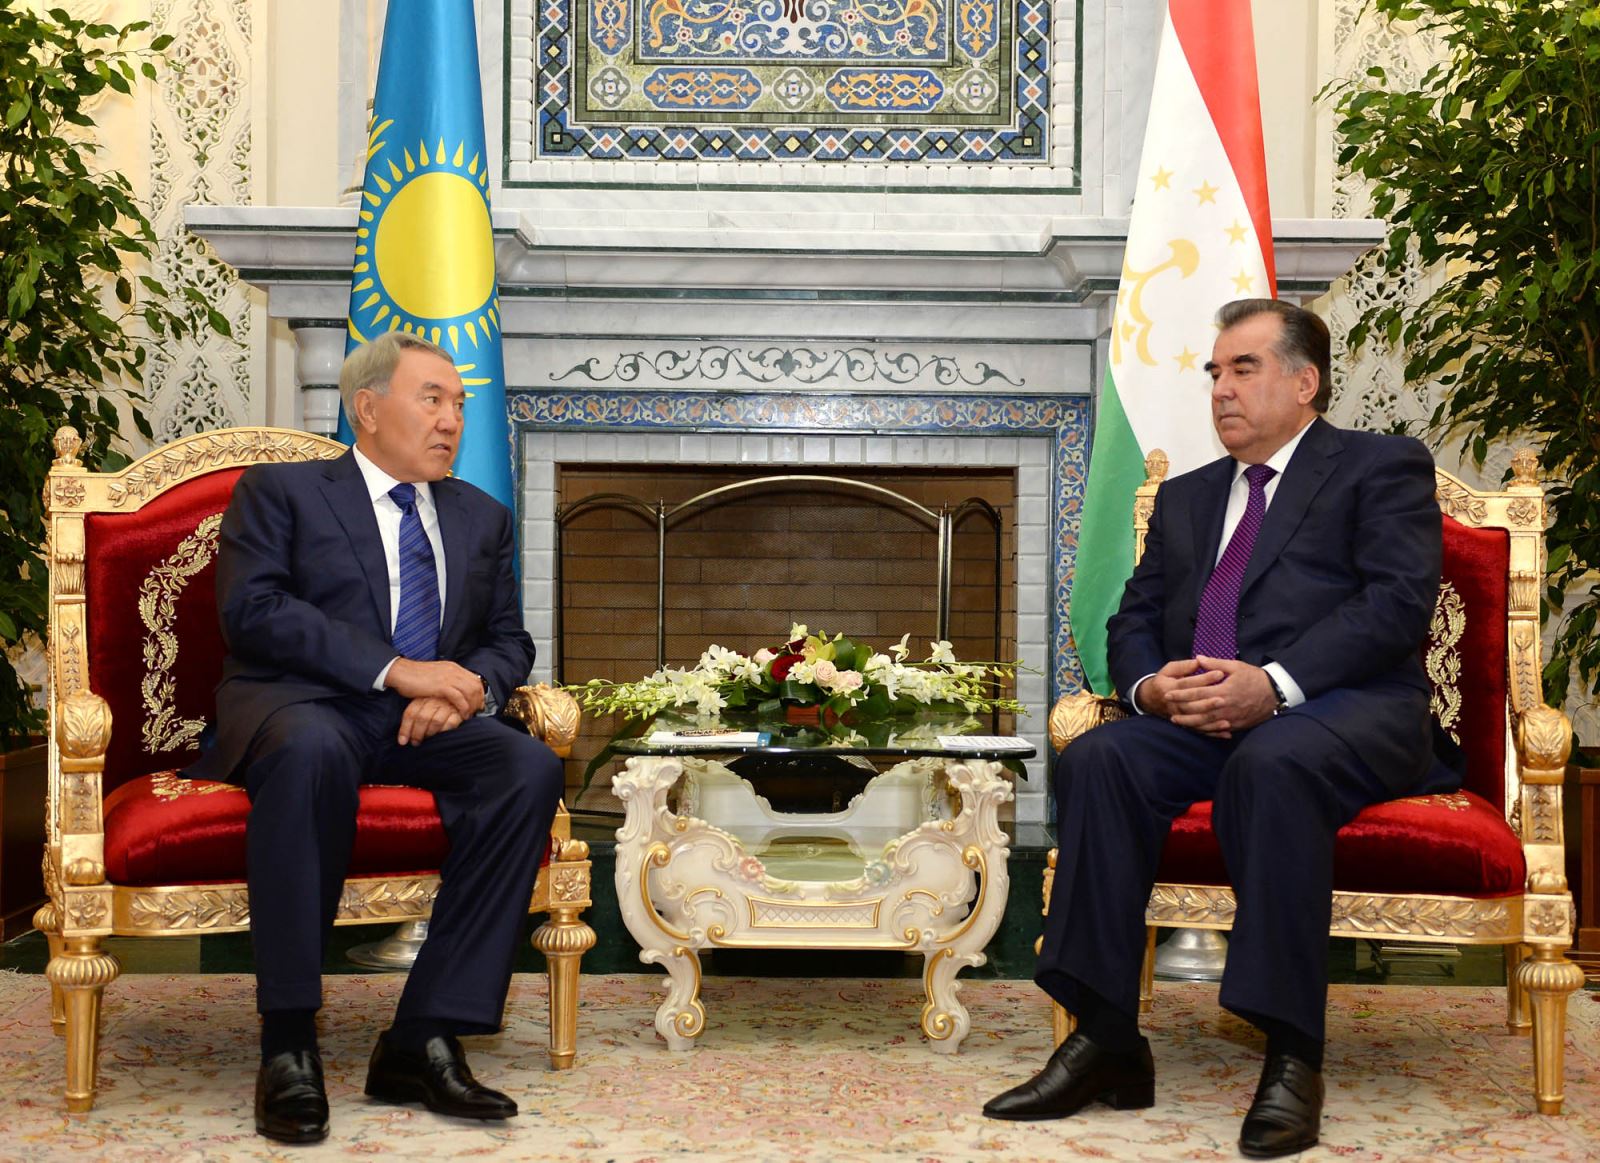 Нурсултан Назарбаев отметил, что Республика Таджикистан является важным партнером нашей страны и Казахстан всегда готов оказывать ей всестороннюю поддержку.